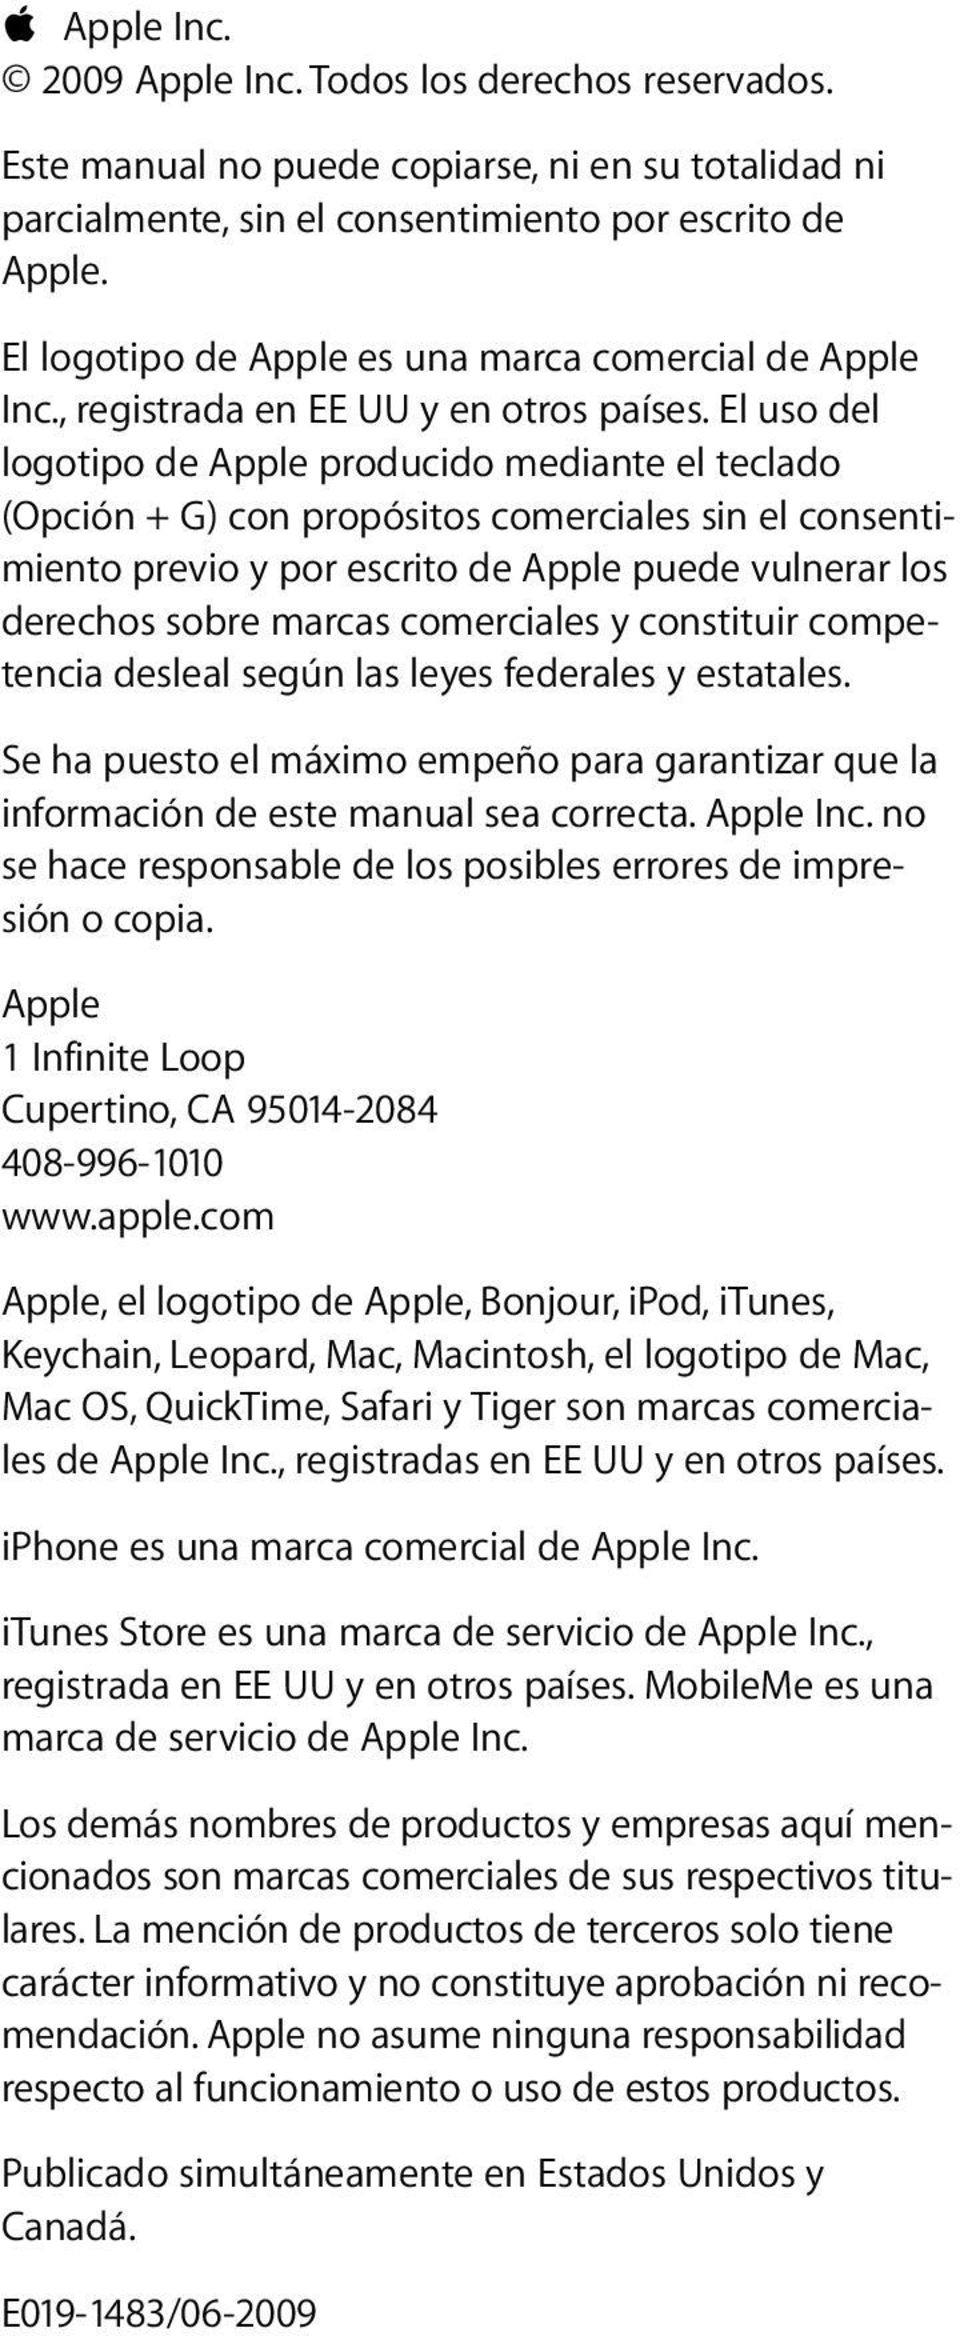 El uso del logotipo de Apple producido mediante el teclado (Opción + G) con propósitos comerciales sin el consentimiento previo y por escrito de Apple puede vulnerar los derechos sobre marcas